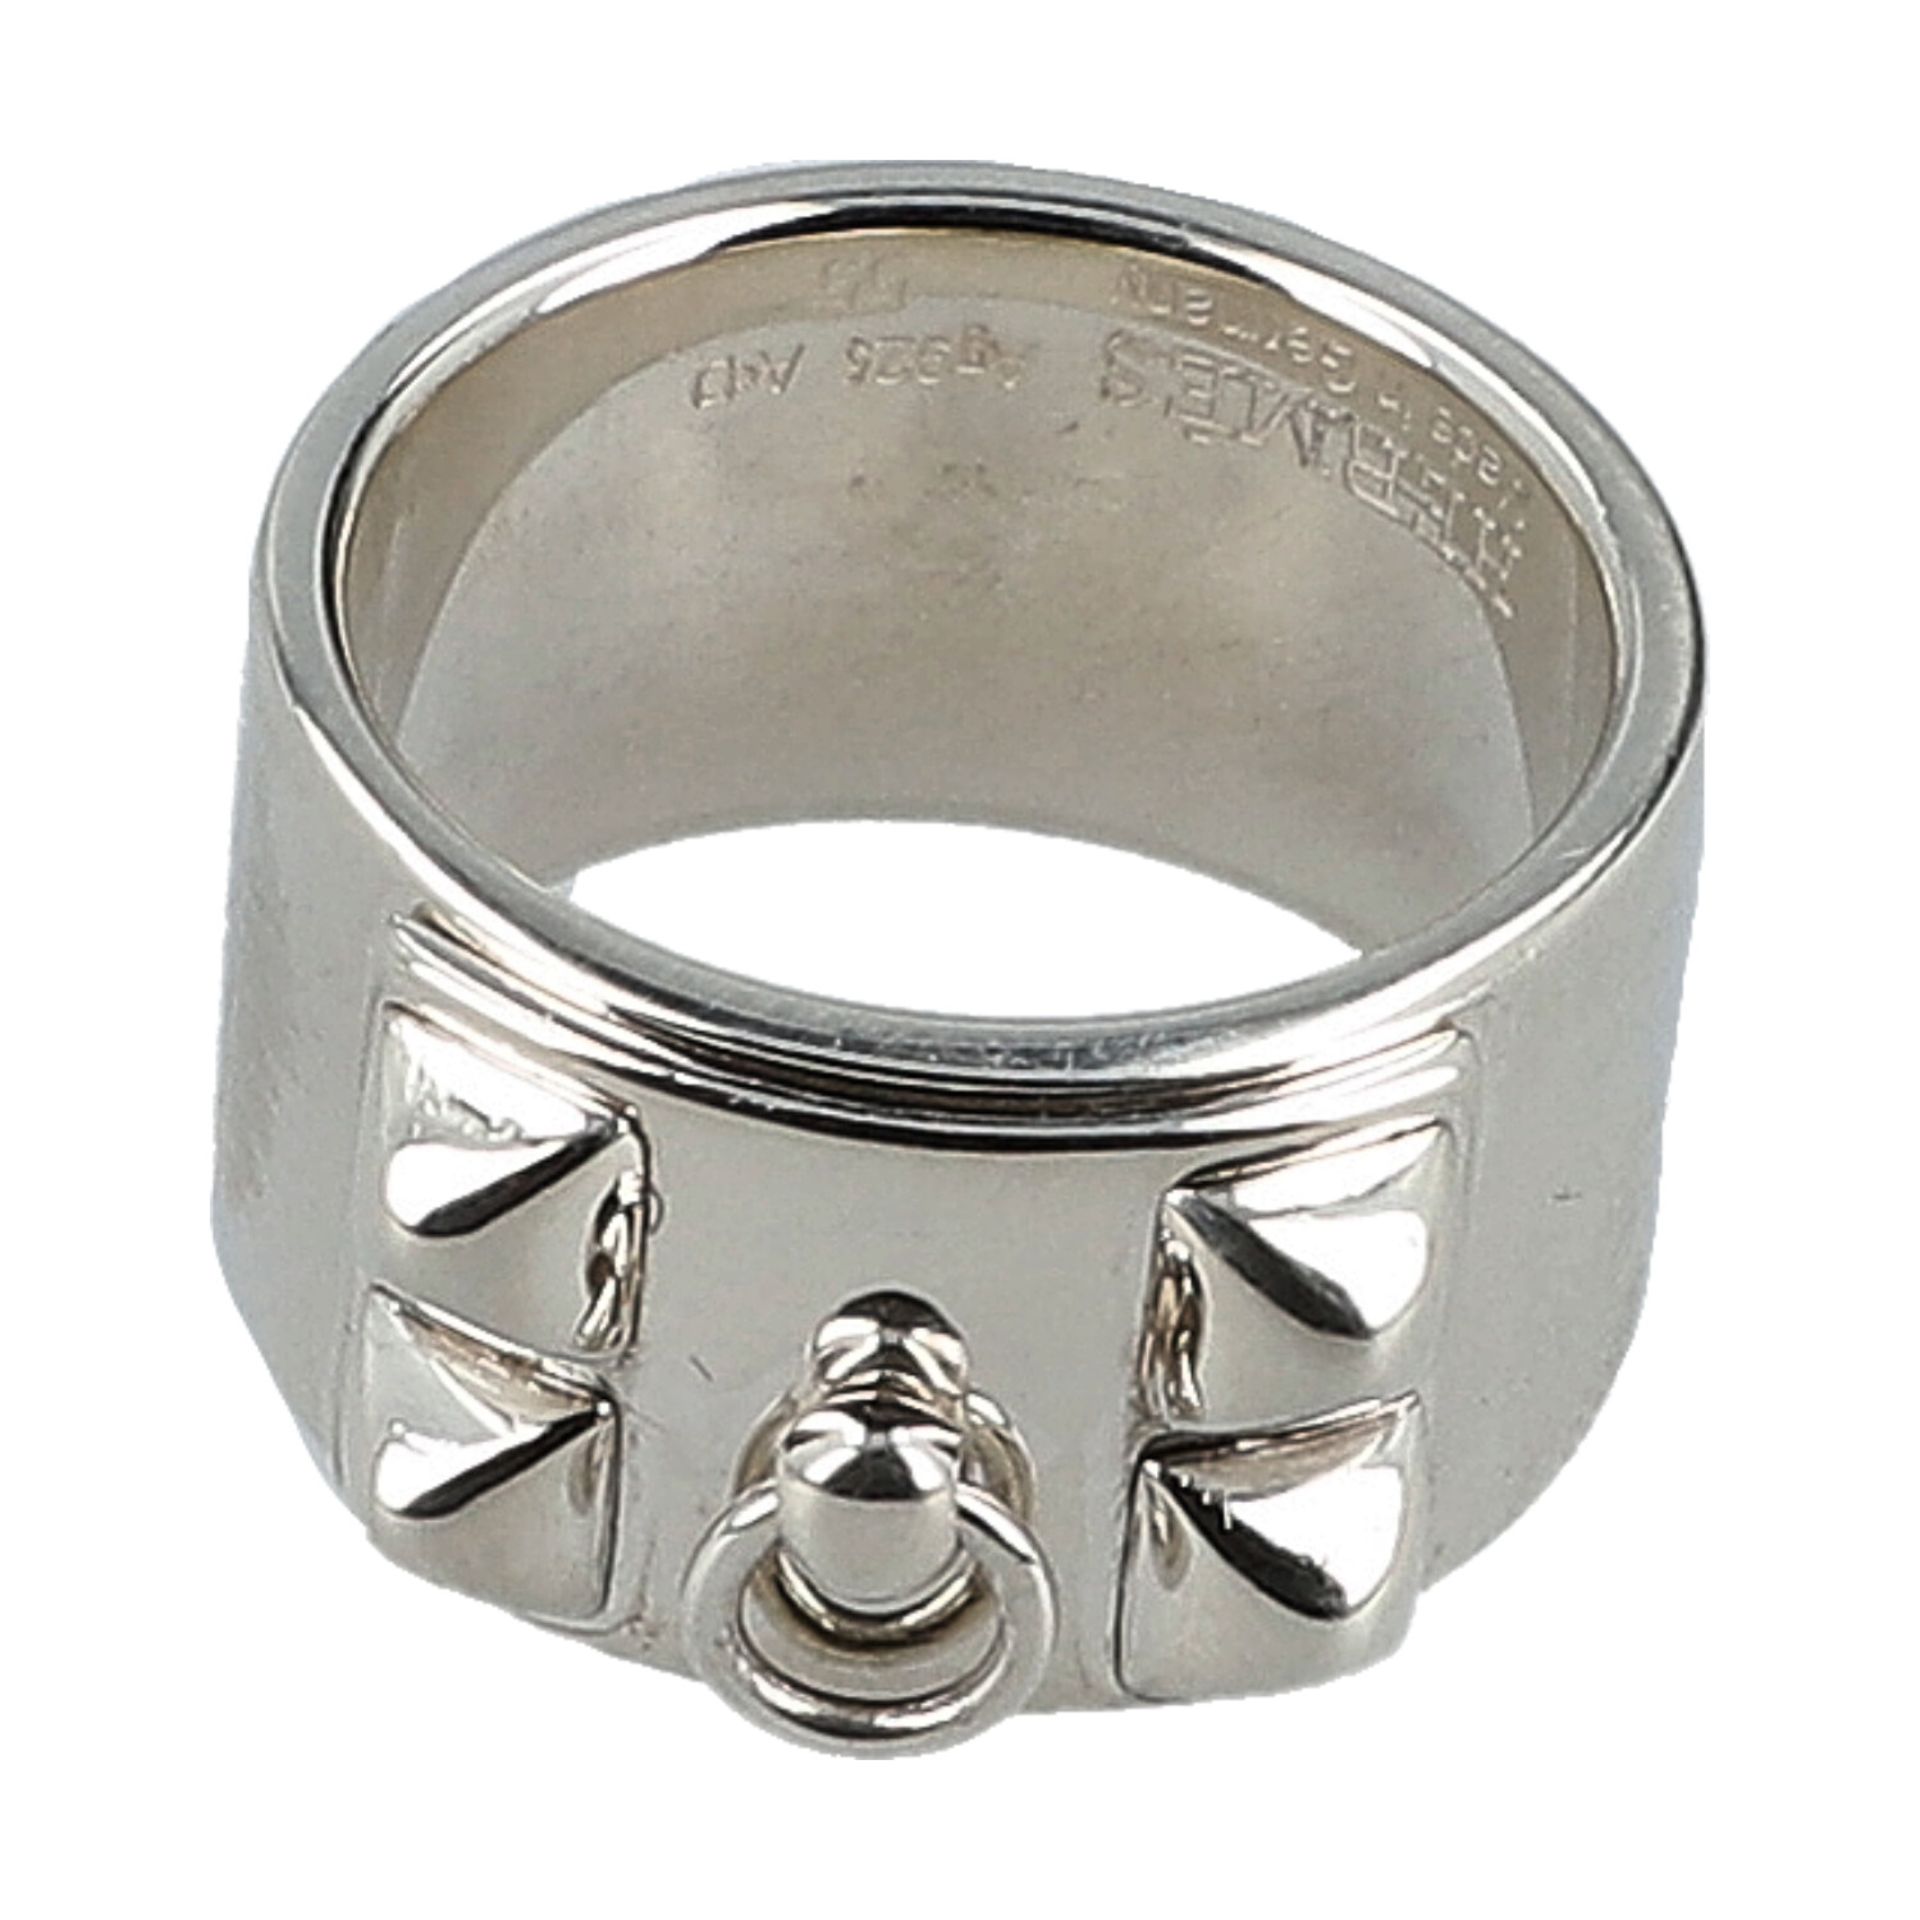 HERMÈS Ring "COLLIER DE CHIEN", Gr. 55. 925 Silber. Massiver Silberring mit klassisch